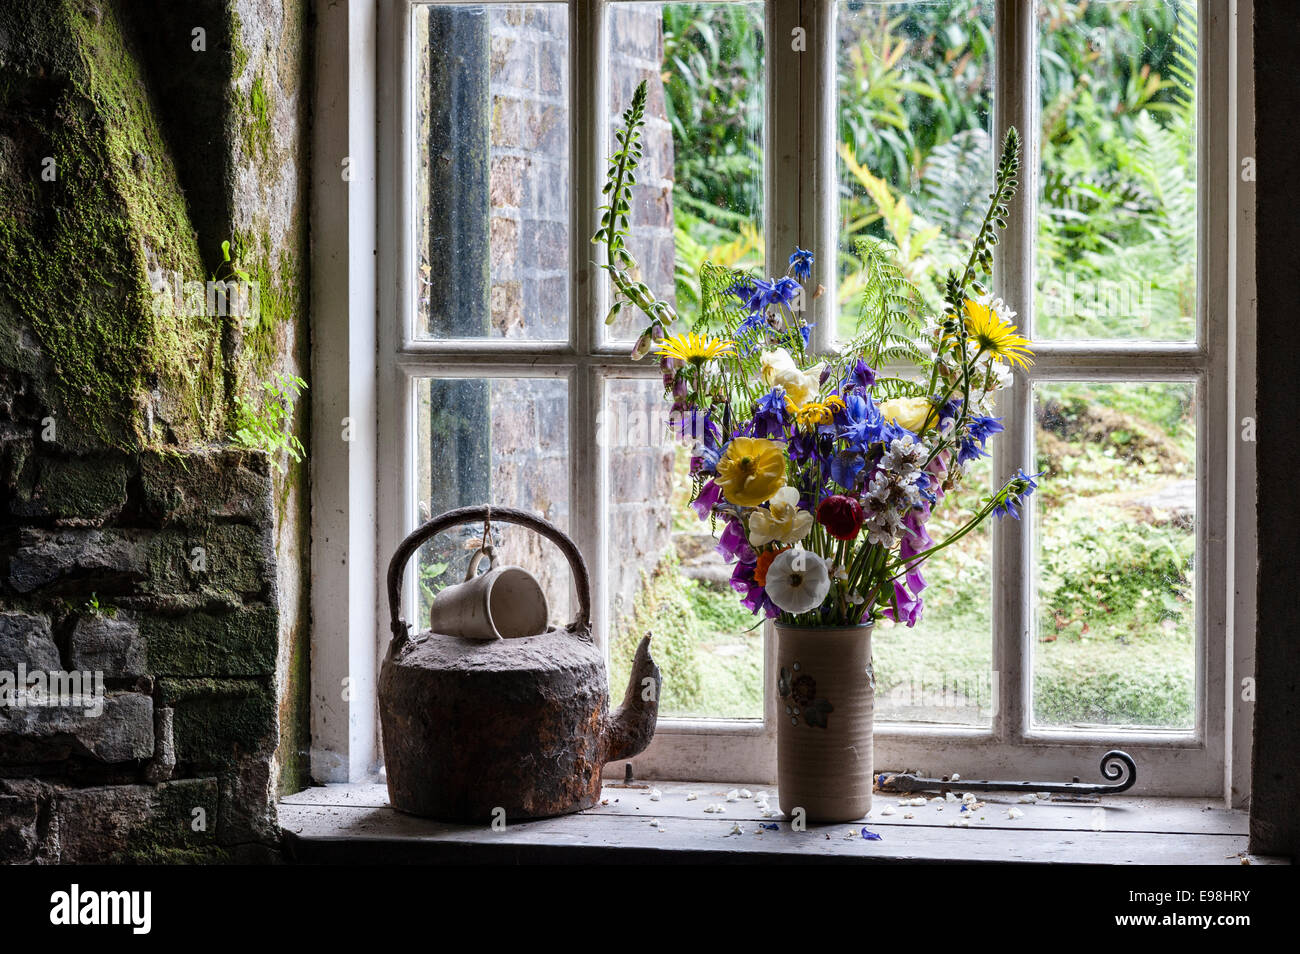 The Lost Gardens of Heligan, Cornwall, Großbritannien. Ein alter Wasserkocher und eine Vase mit Schnittblumen auf dem Fensterbrett eines Gartenhäuschens Stockfoto